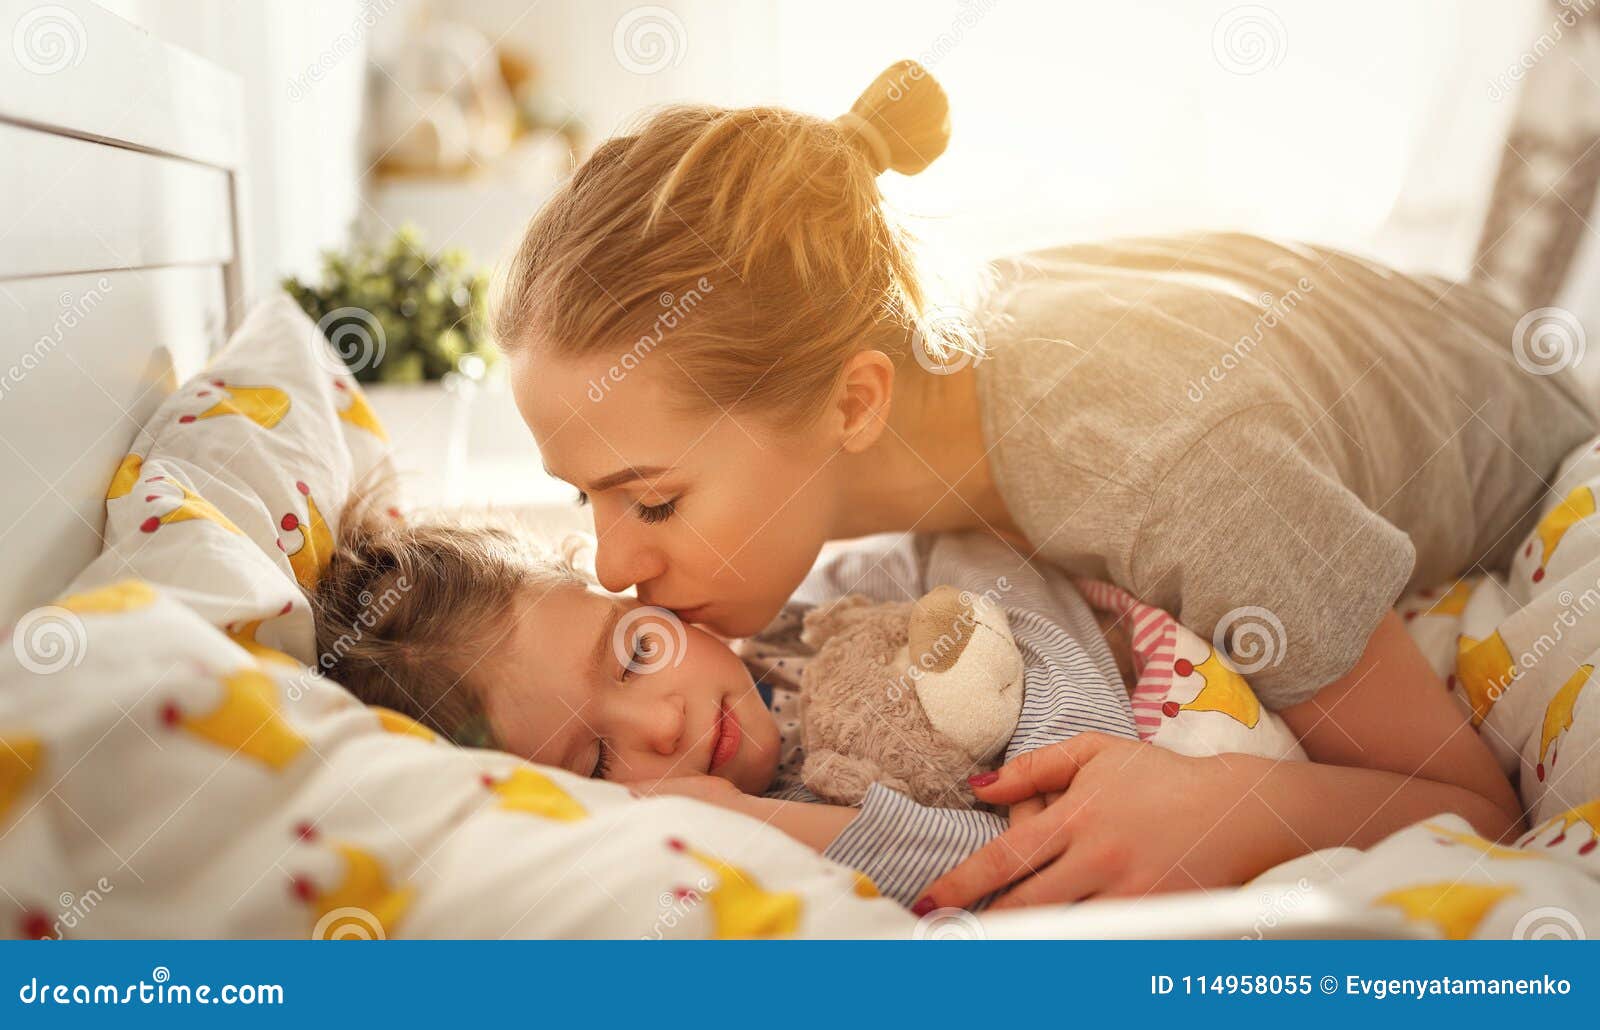 Снится мама целует